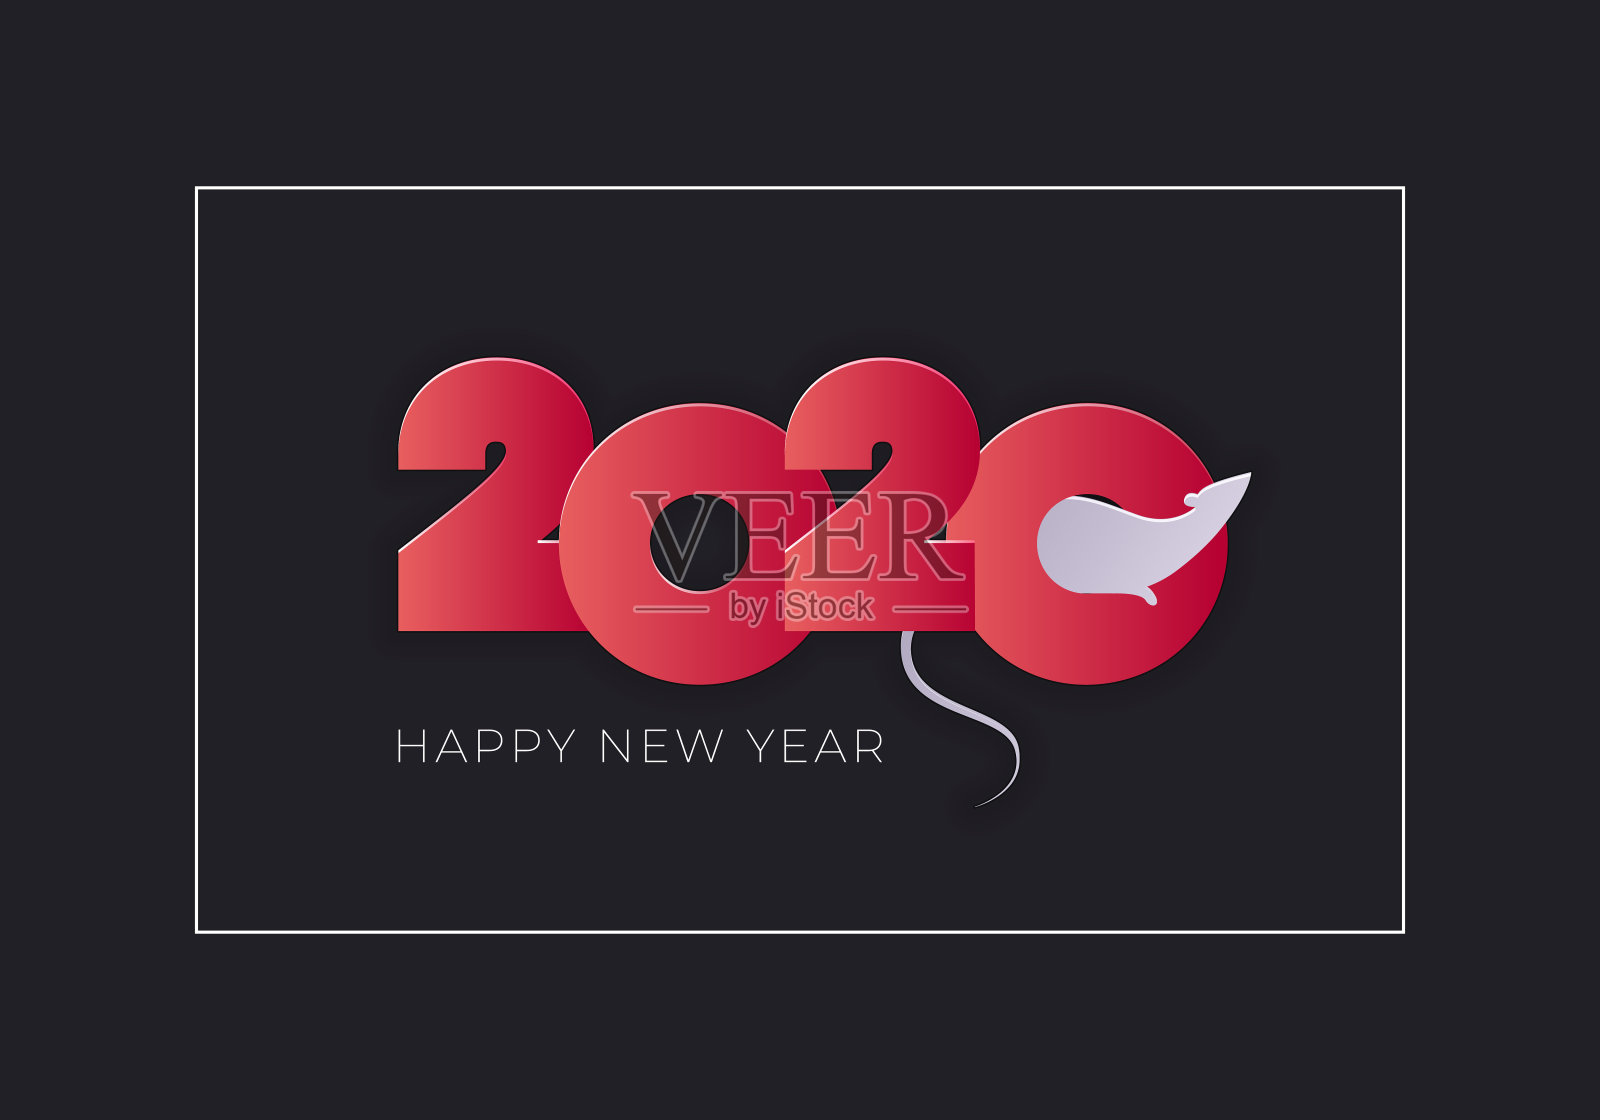 矢量现代平面2020年新年问候横幅模板。红色渐变文本与老鼠轮廓在矩形框架上的黑色背景。设计插图日历，节日贺卡，派对海报。插画图片素材